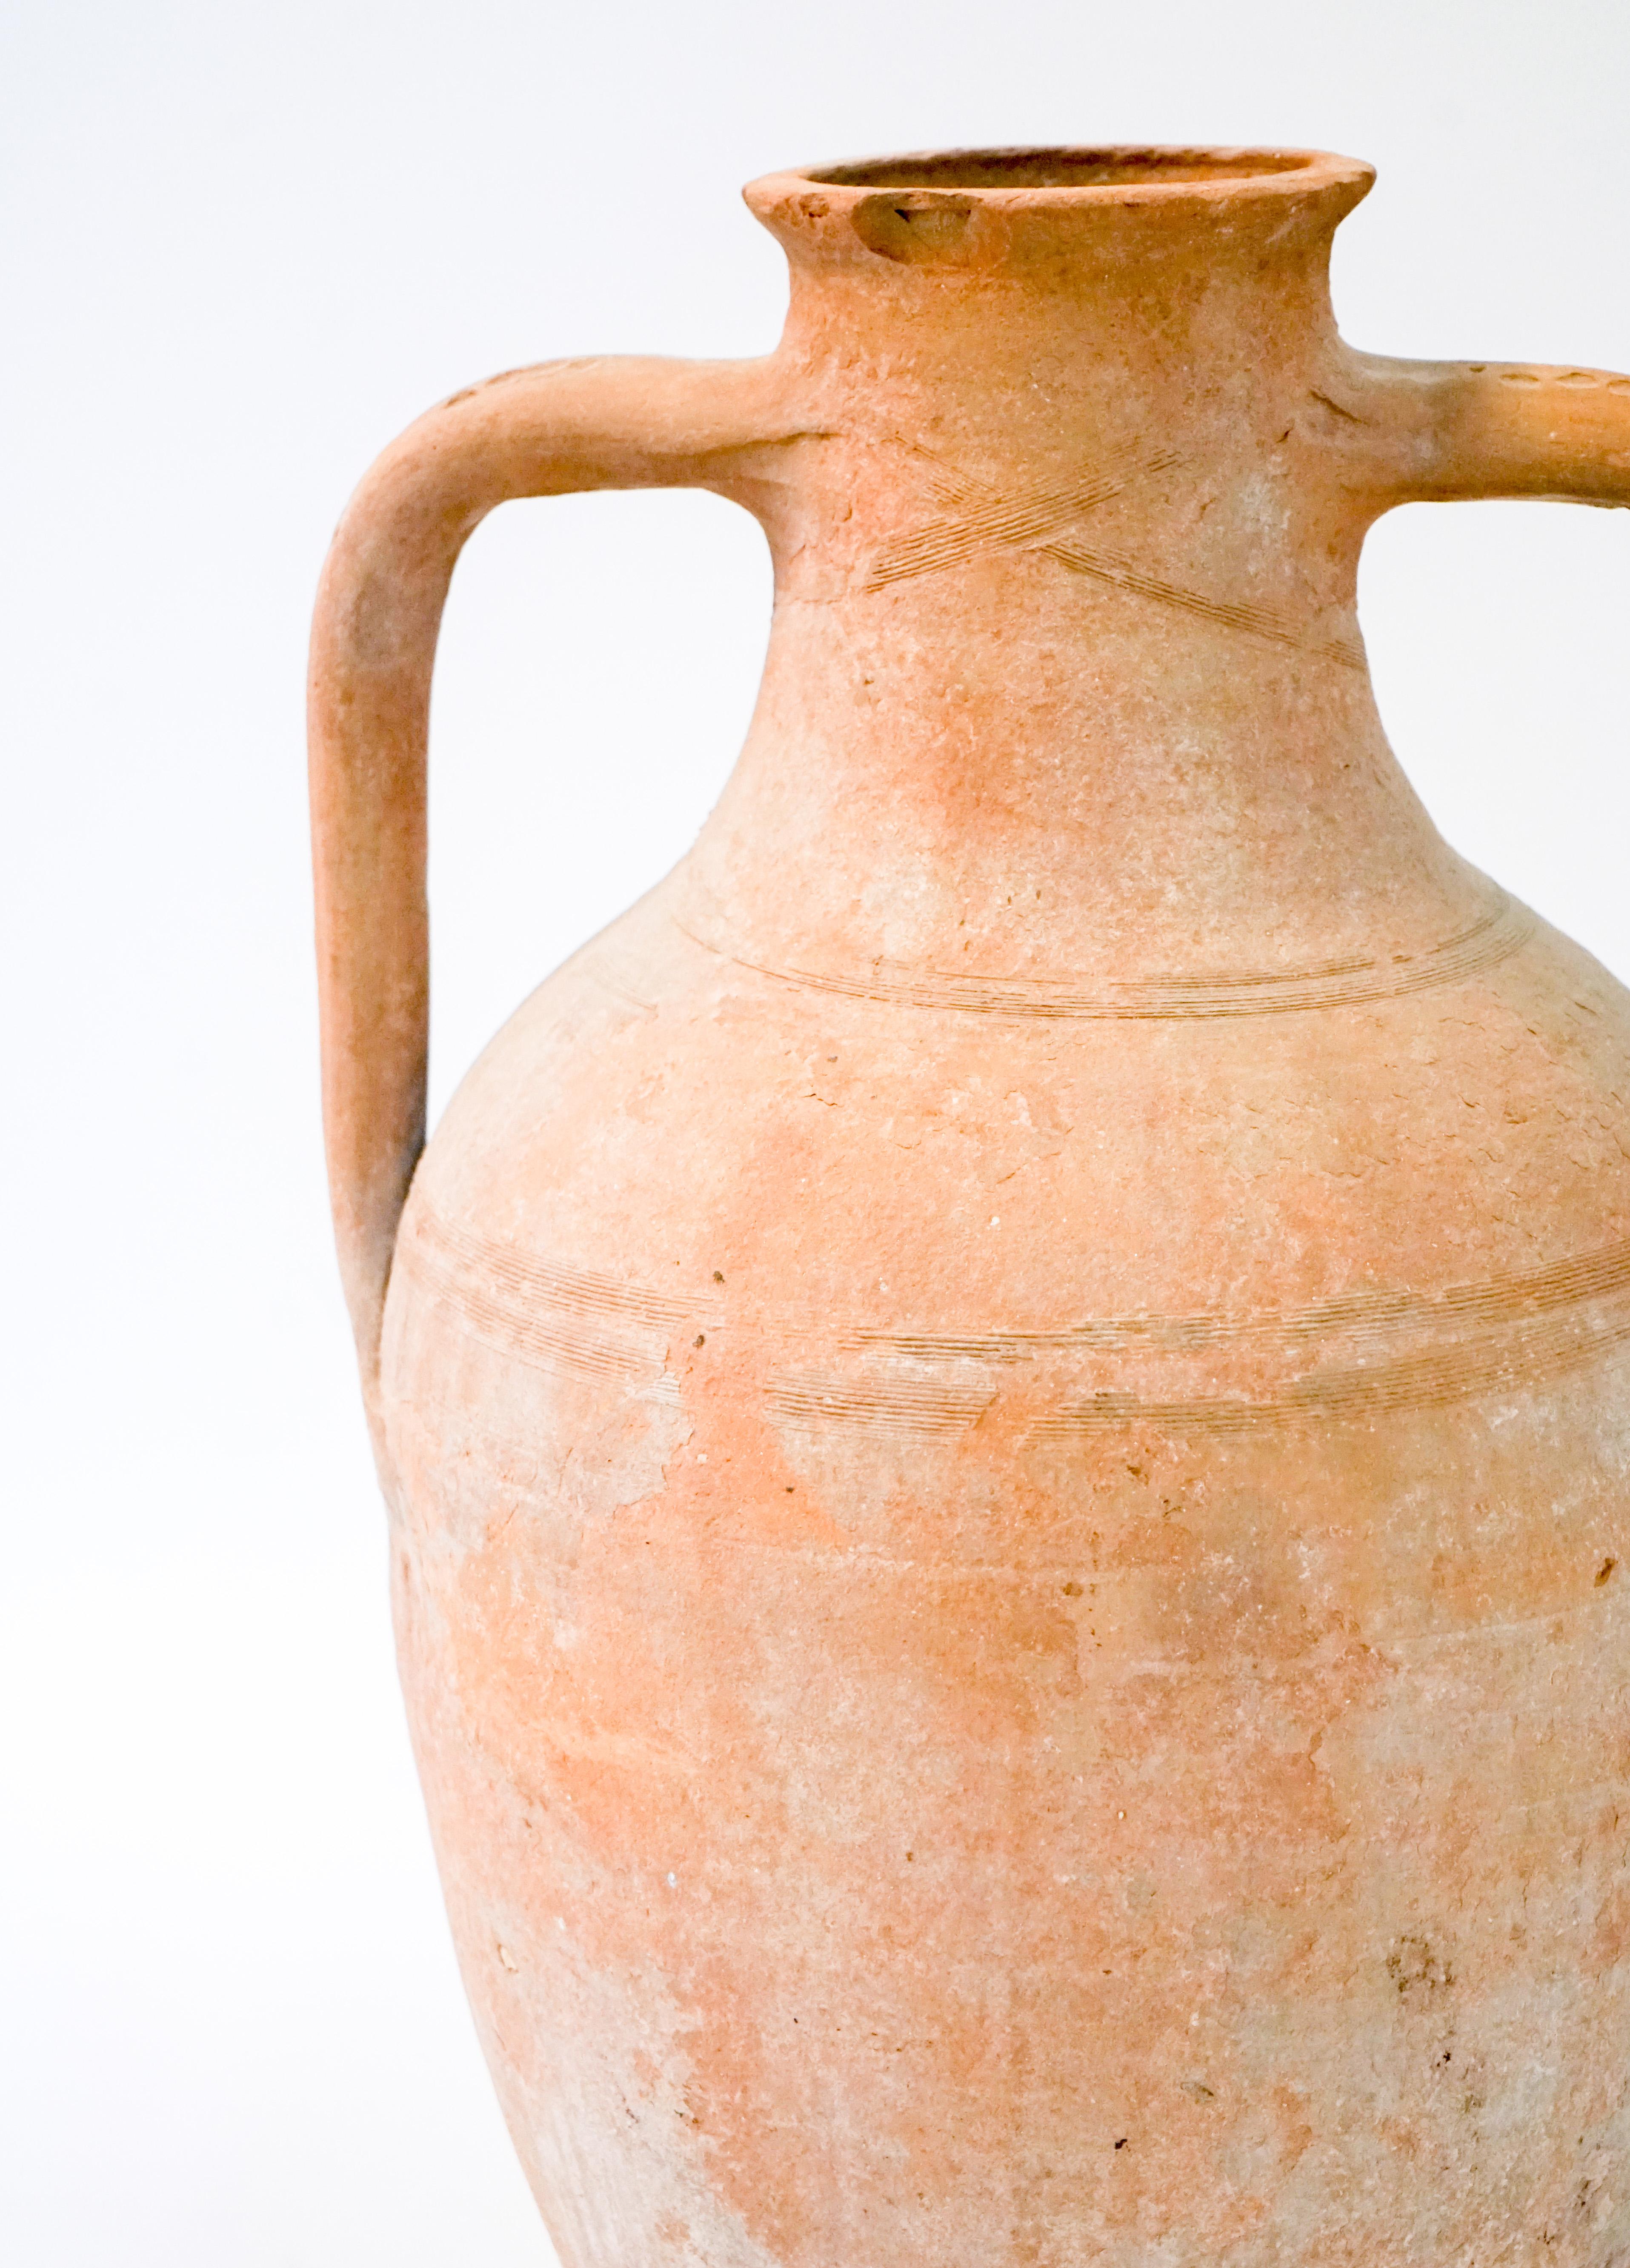 Terracotta Greek vessel with two handles.

Origin: Greece

Measurements:
Approx. 20